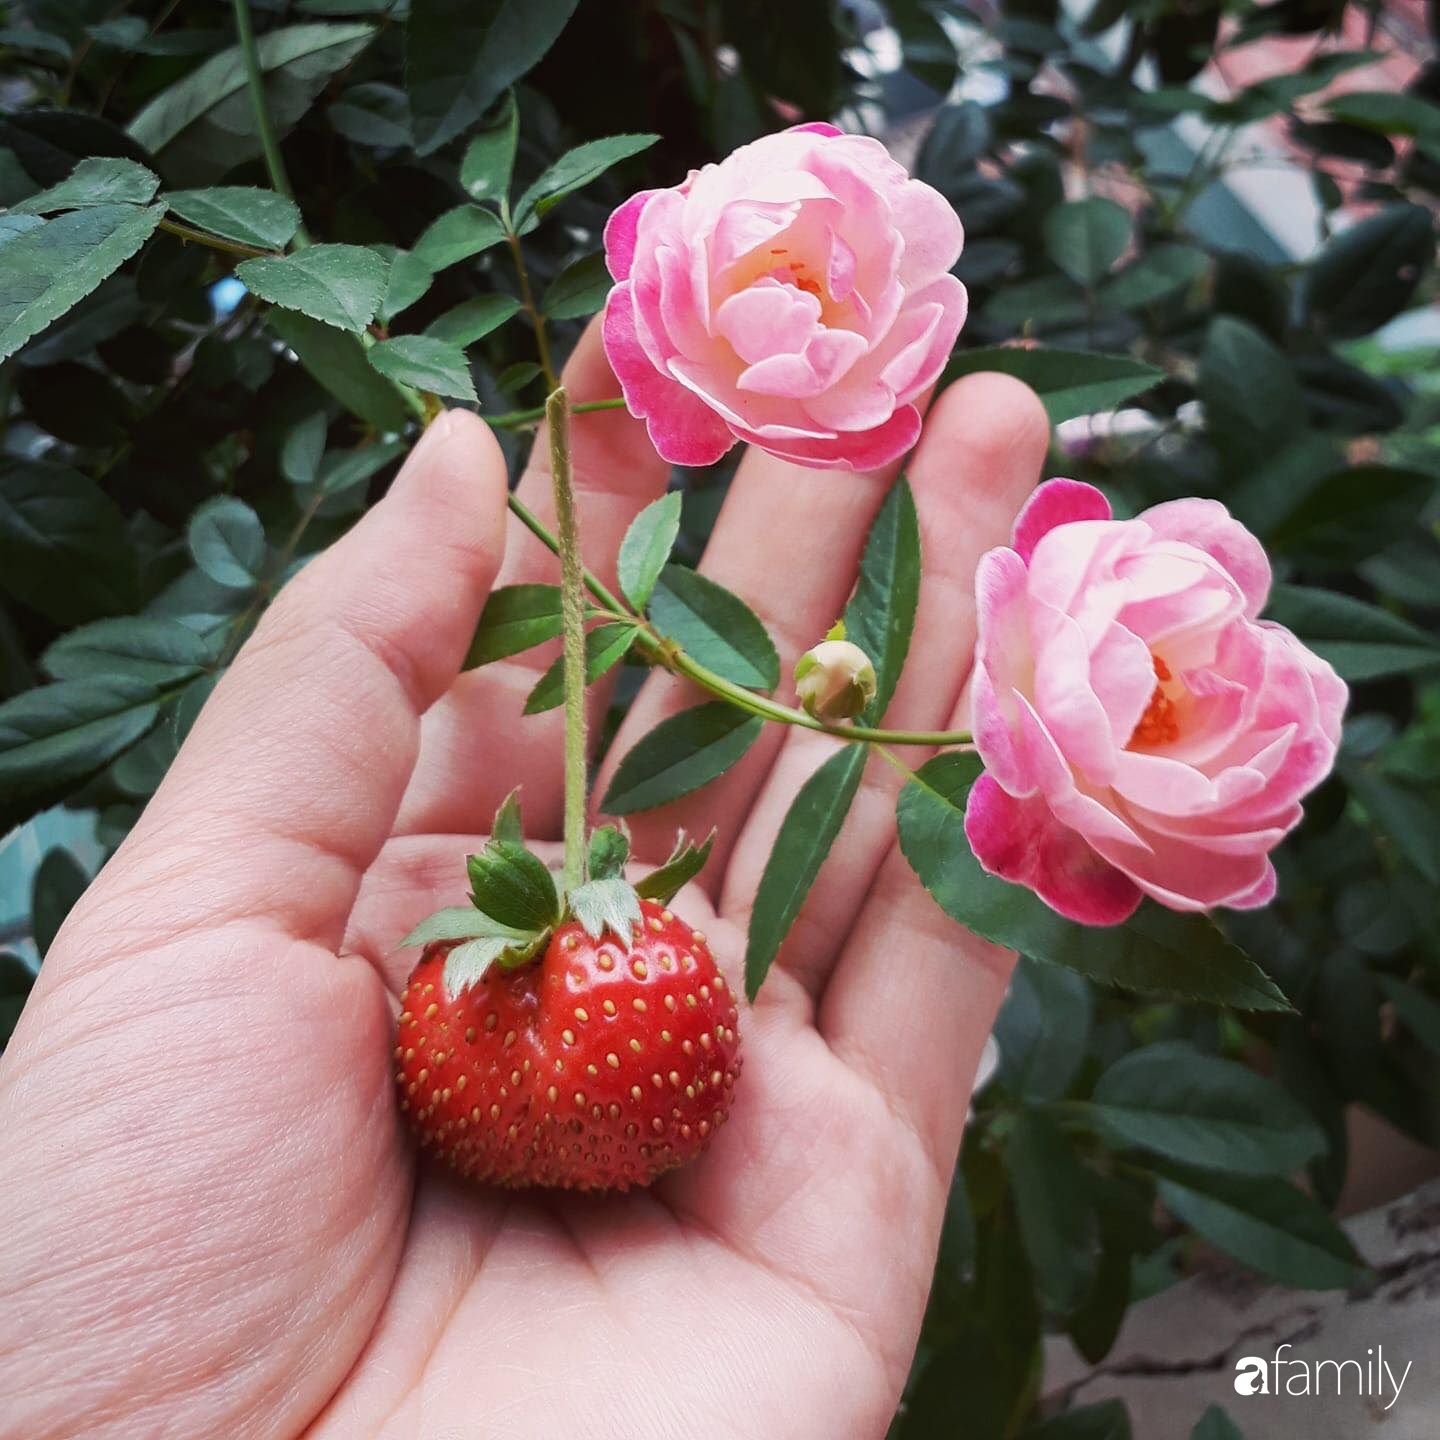 Ban công tập thể biến thành khu vườn đủ loại rau quả và hoa nhờ bí quyết đặc biệt của mẹ trẻ Hà Nội - Ảnh 16.